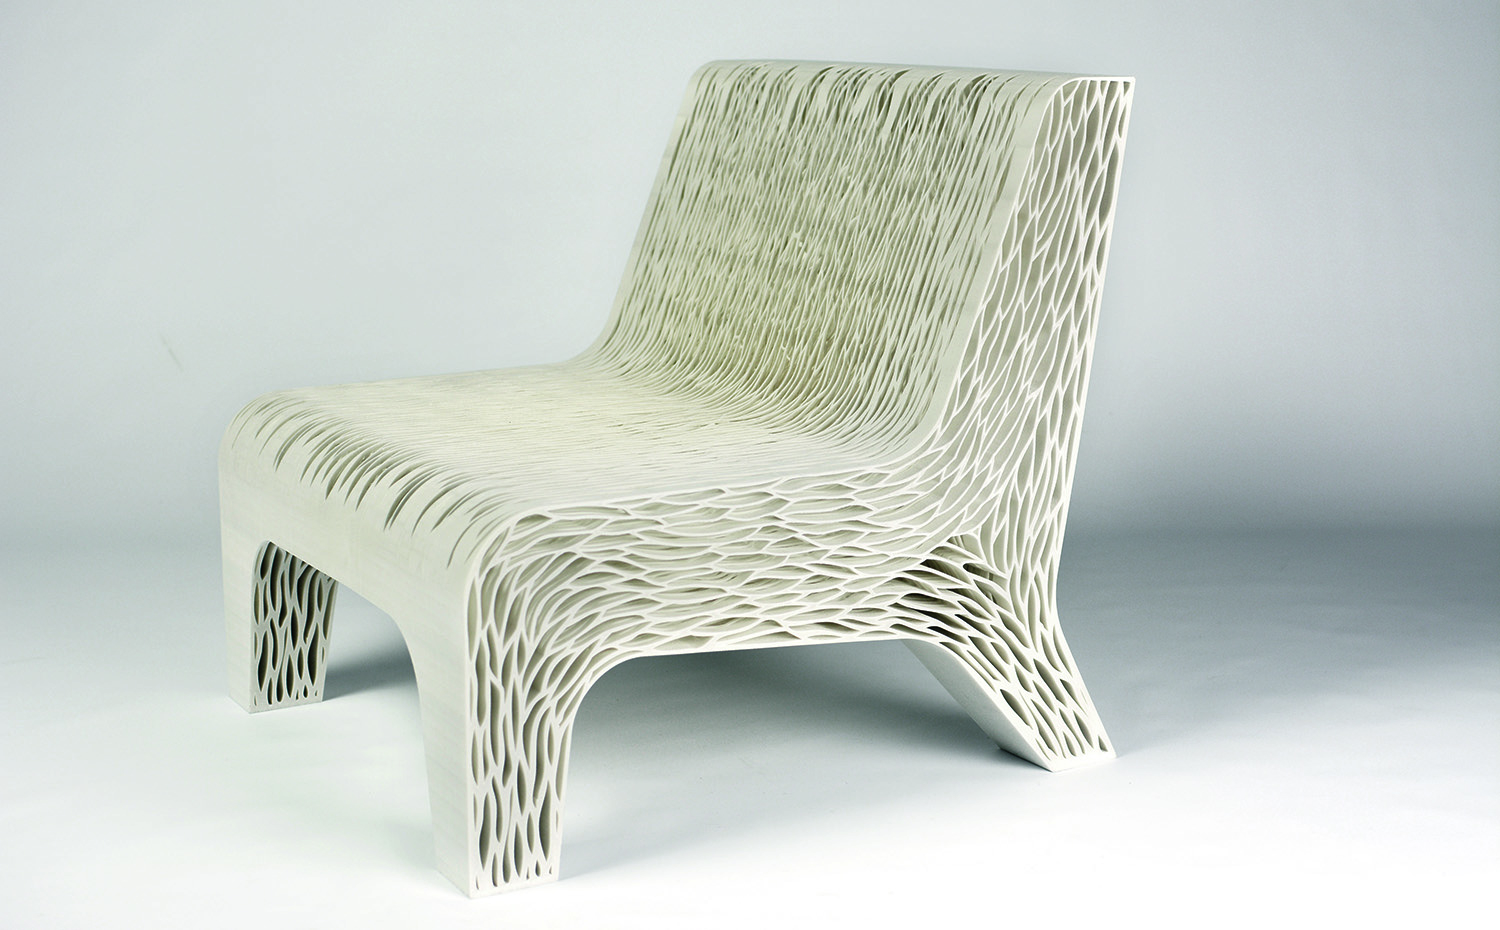 Aplicando técnicas de biomímesis, Lilian van Daal ha creado esta silla que integra estructura y tapizado